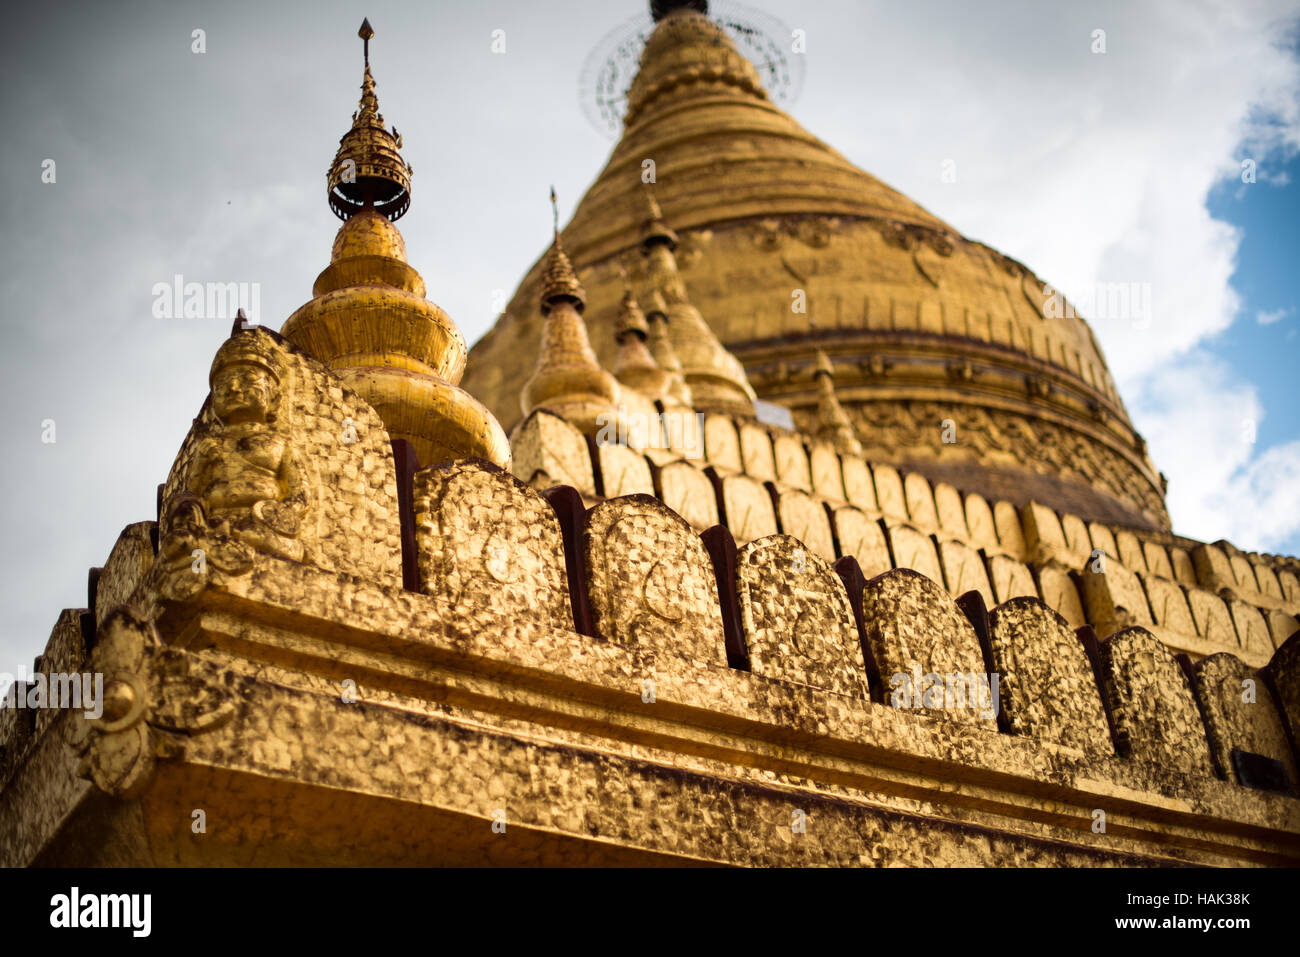 NYAUNG-U, Myanmar (Birma) - erbaut im 11. Jahrhundert, Shwezigon Pagode befindet sich in Nyaung-U, in der Nähe von Bagan. Strahlen Sie von einem großen zentralen Blattgold vergoldeten glockenförmigen Stupa eine Reihe von kleineren Tempeln und Schreinen. Die Stupa ist solide, und die Legende besagt, dass es einen Knochen und Zahn des Gautama Buddha verankert sind. Stockfoto